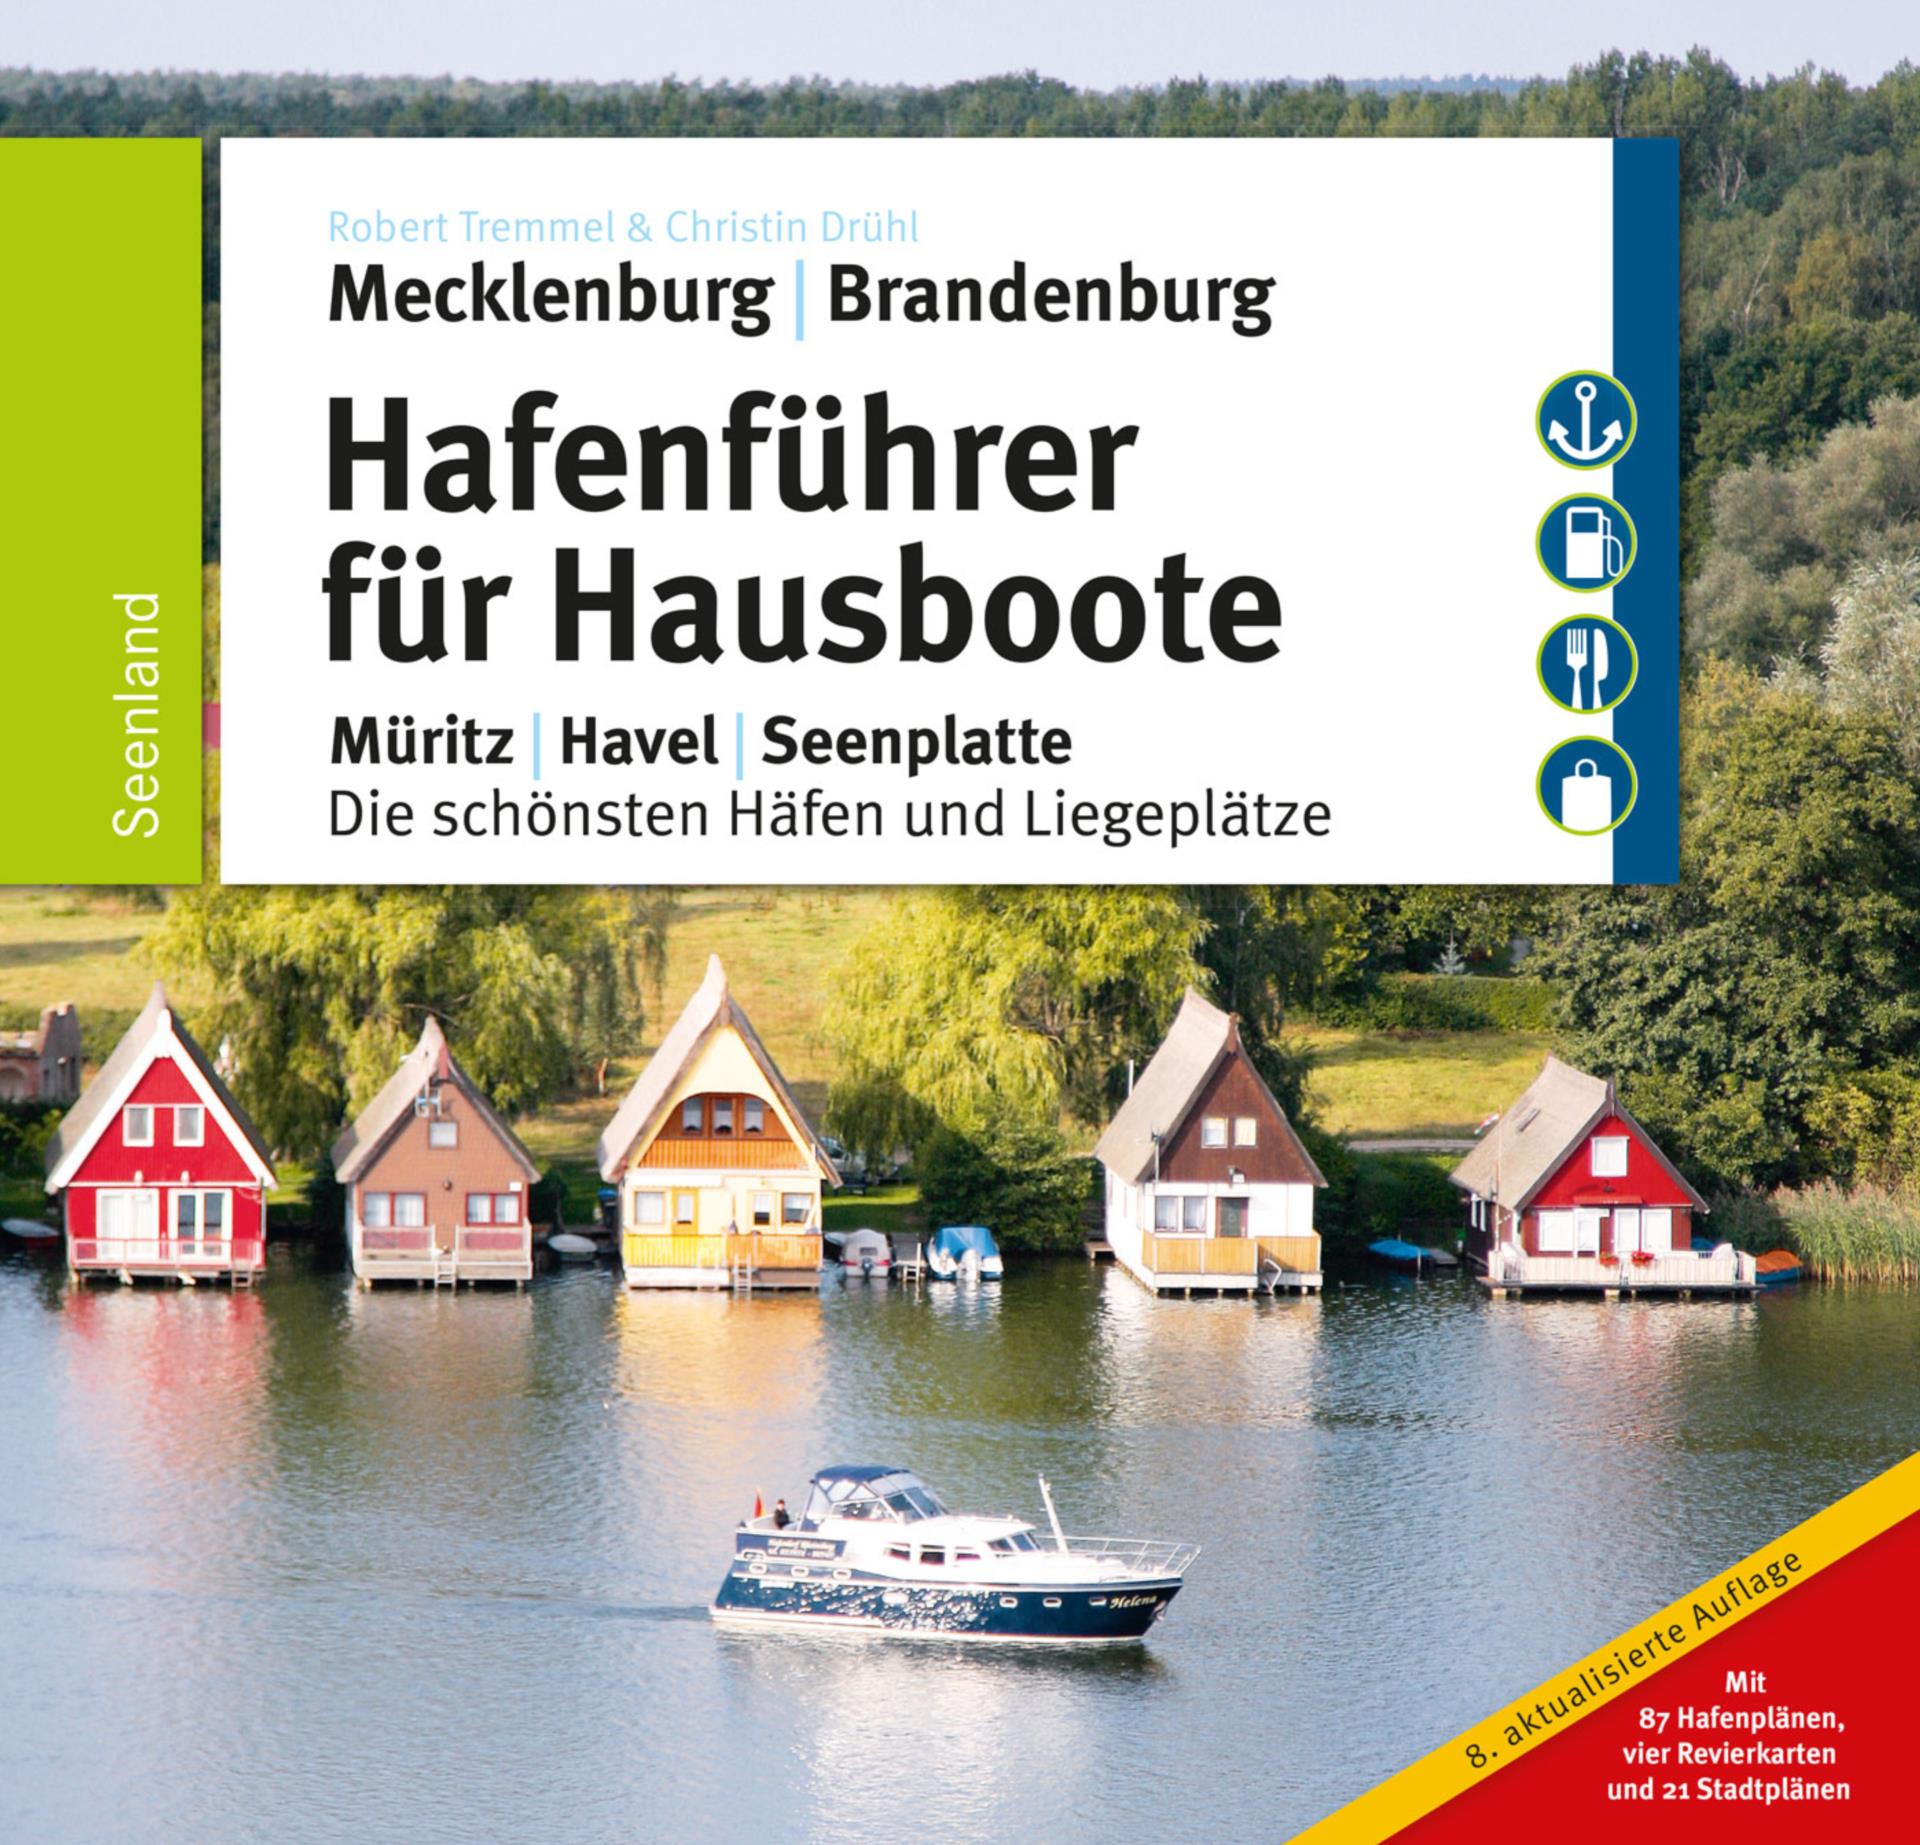 Hafenfüher für Hausboote in Mecklenburg & Brandenburg